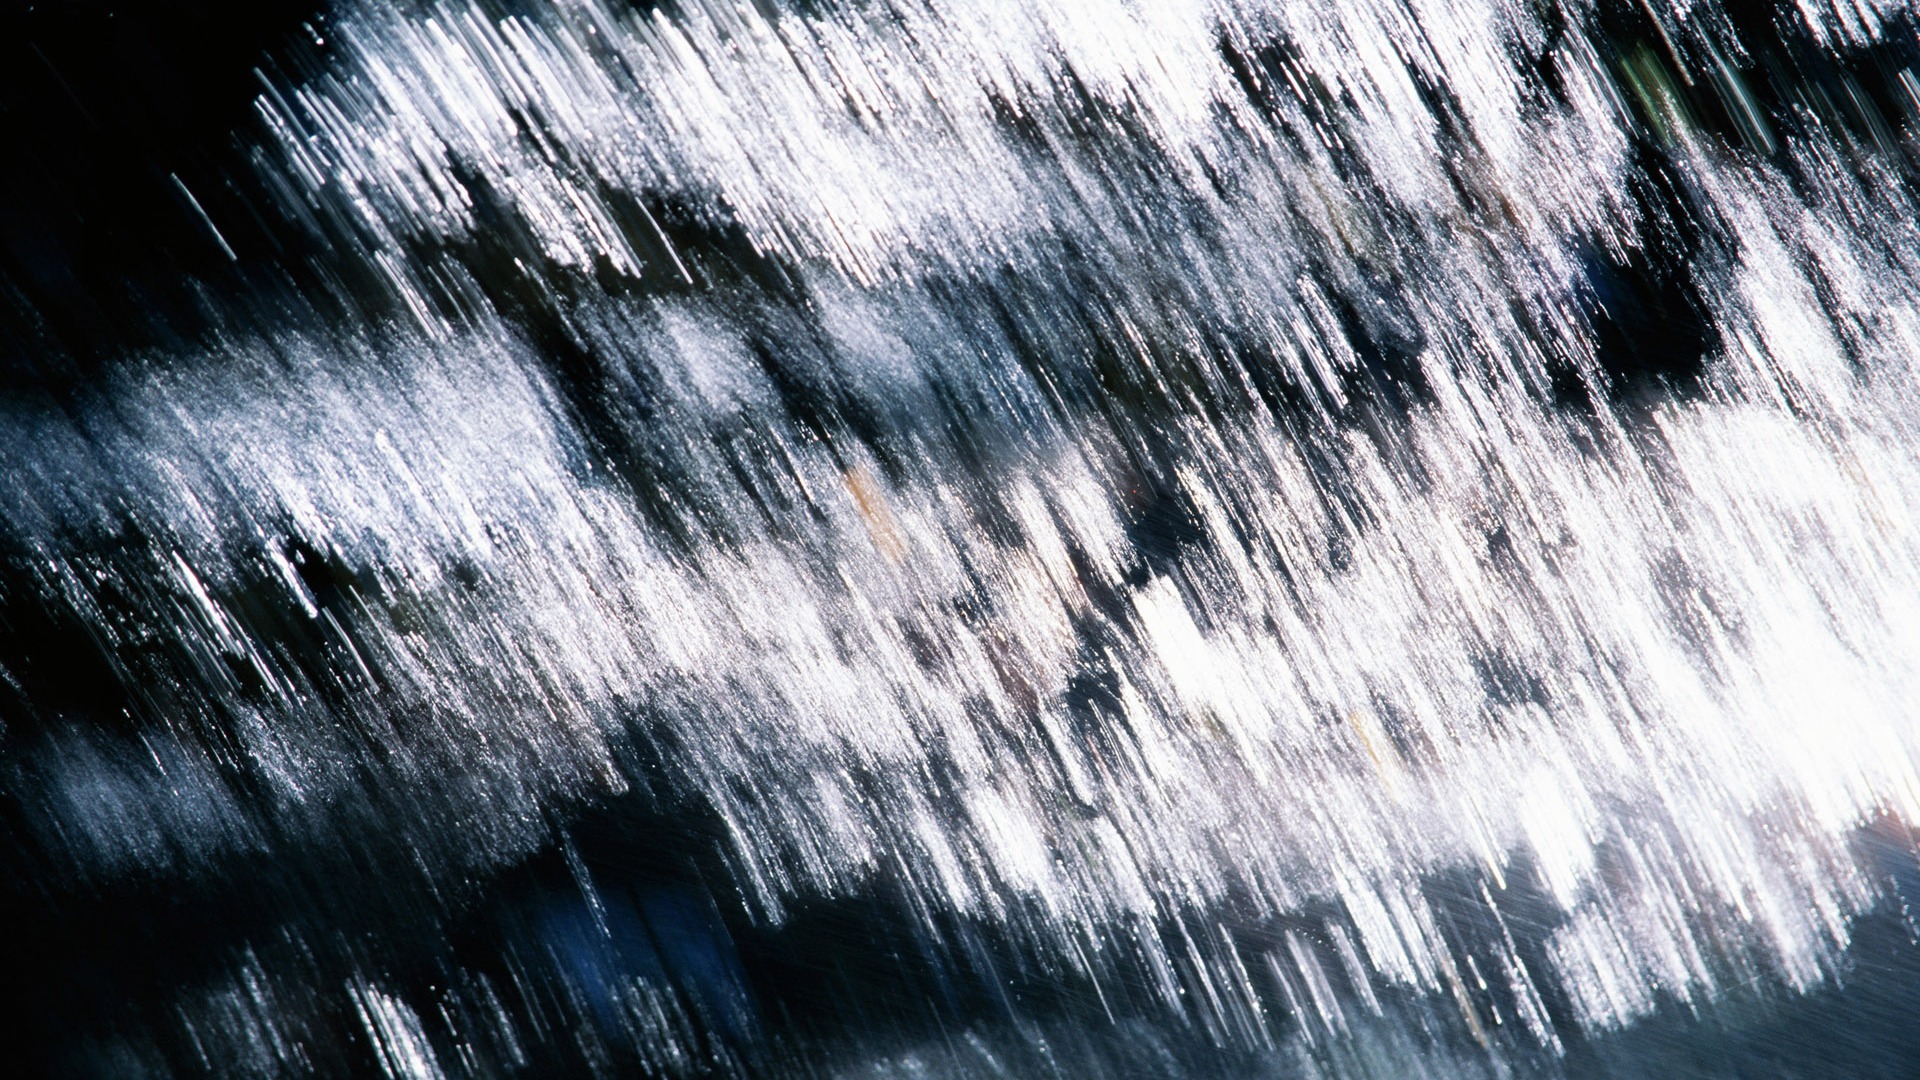 Waterfall flux HD Wallpapers #24 - 1920x1080